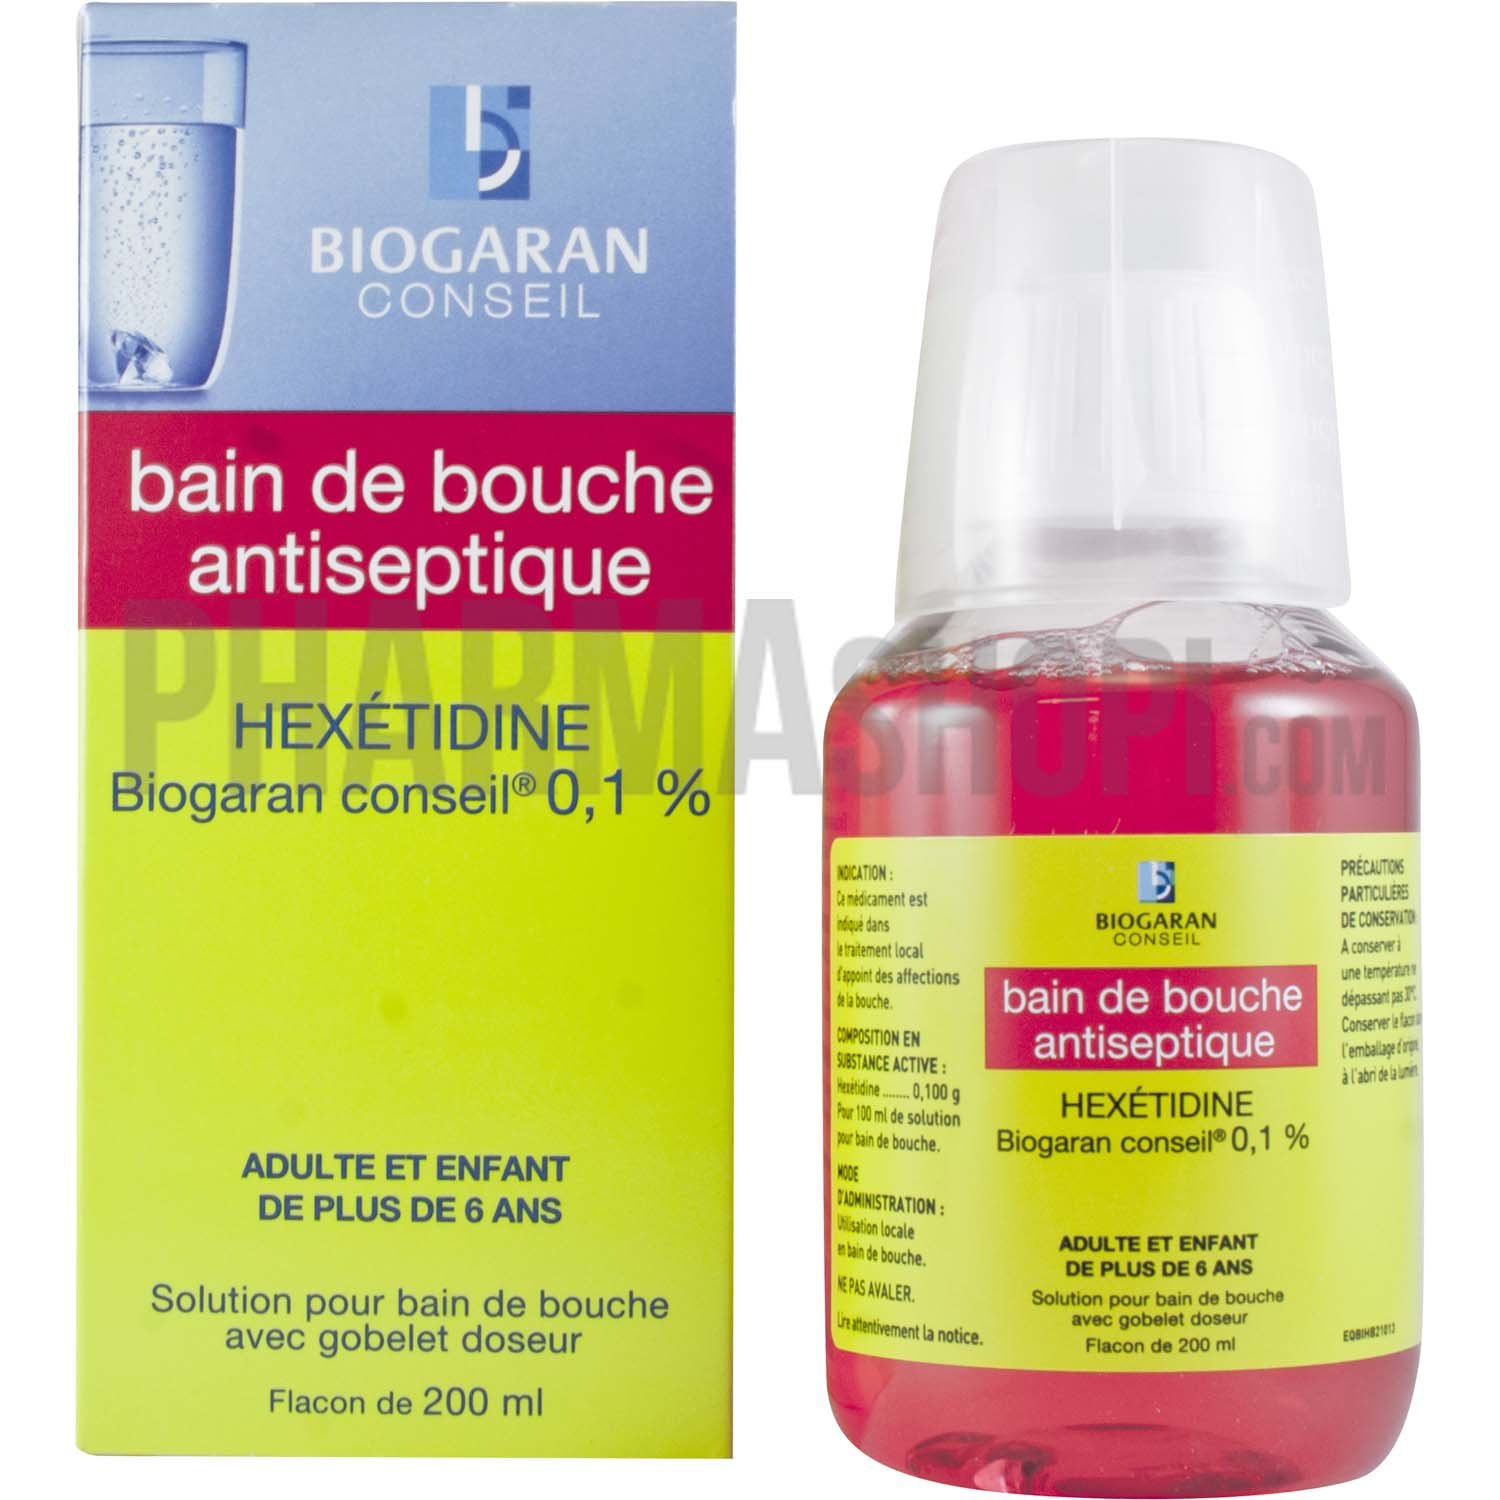 Hexétidine Biogaran conseil 0,1% - flacon de 200 ml